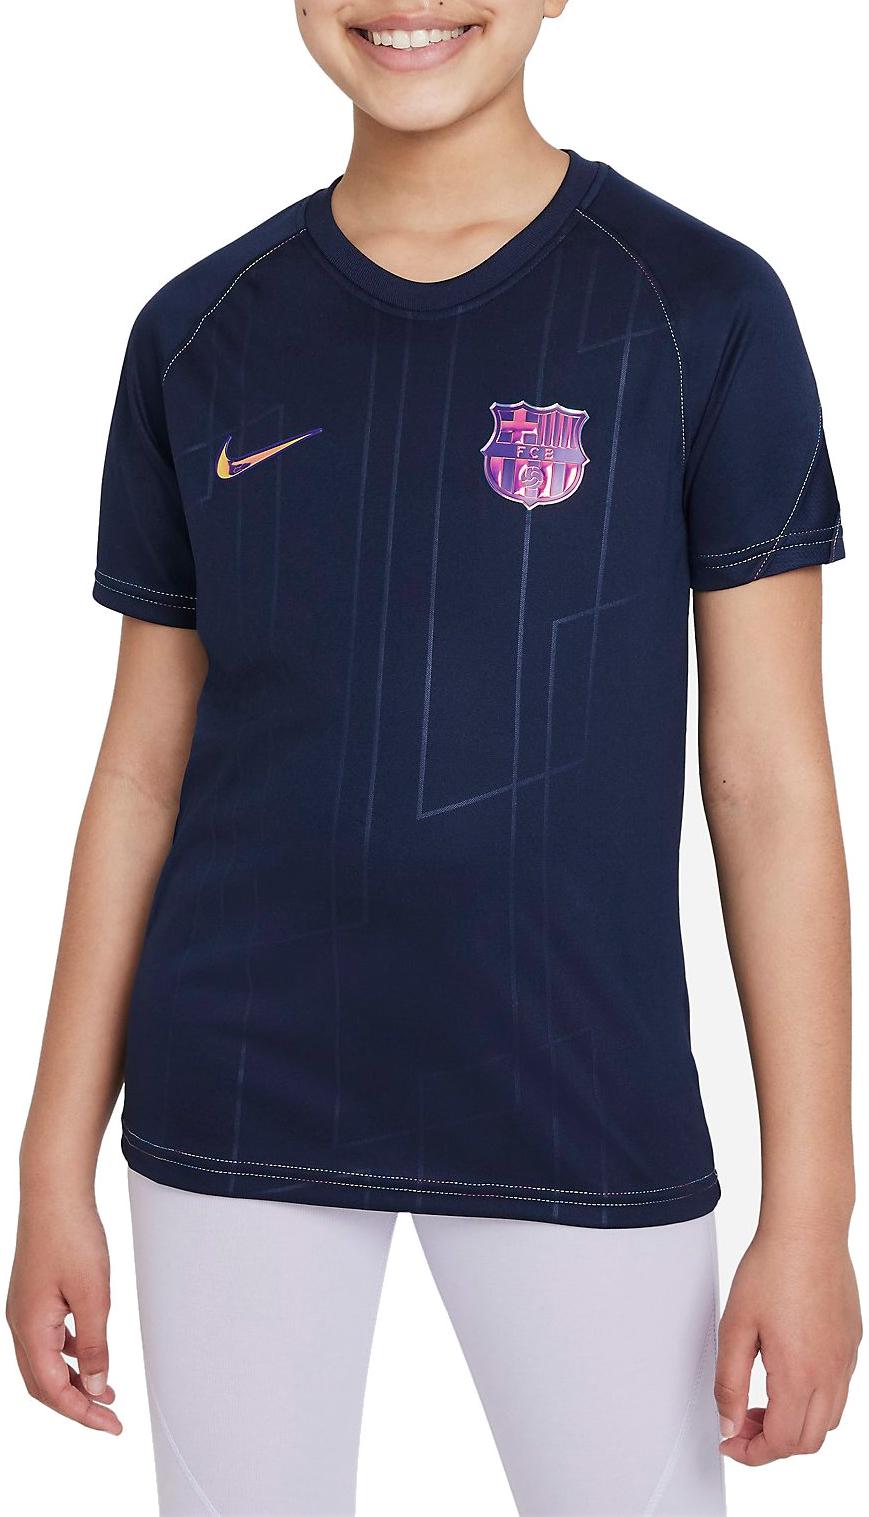 Tričko s krátkým rukávem pro větší děti Nike FC Barcelona